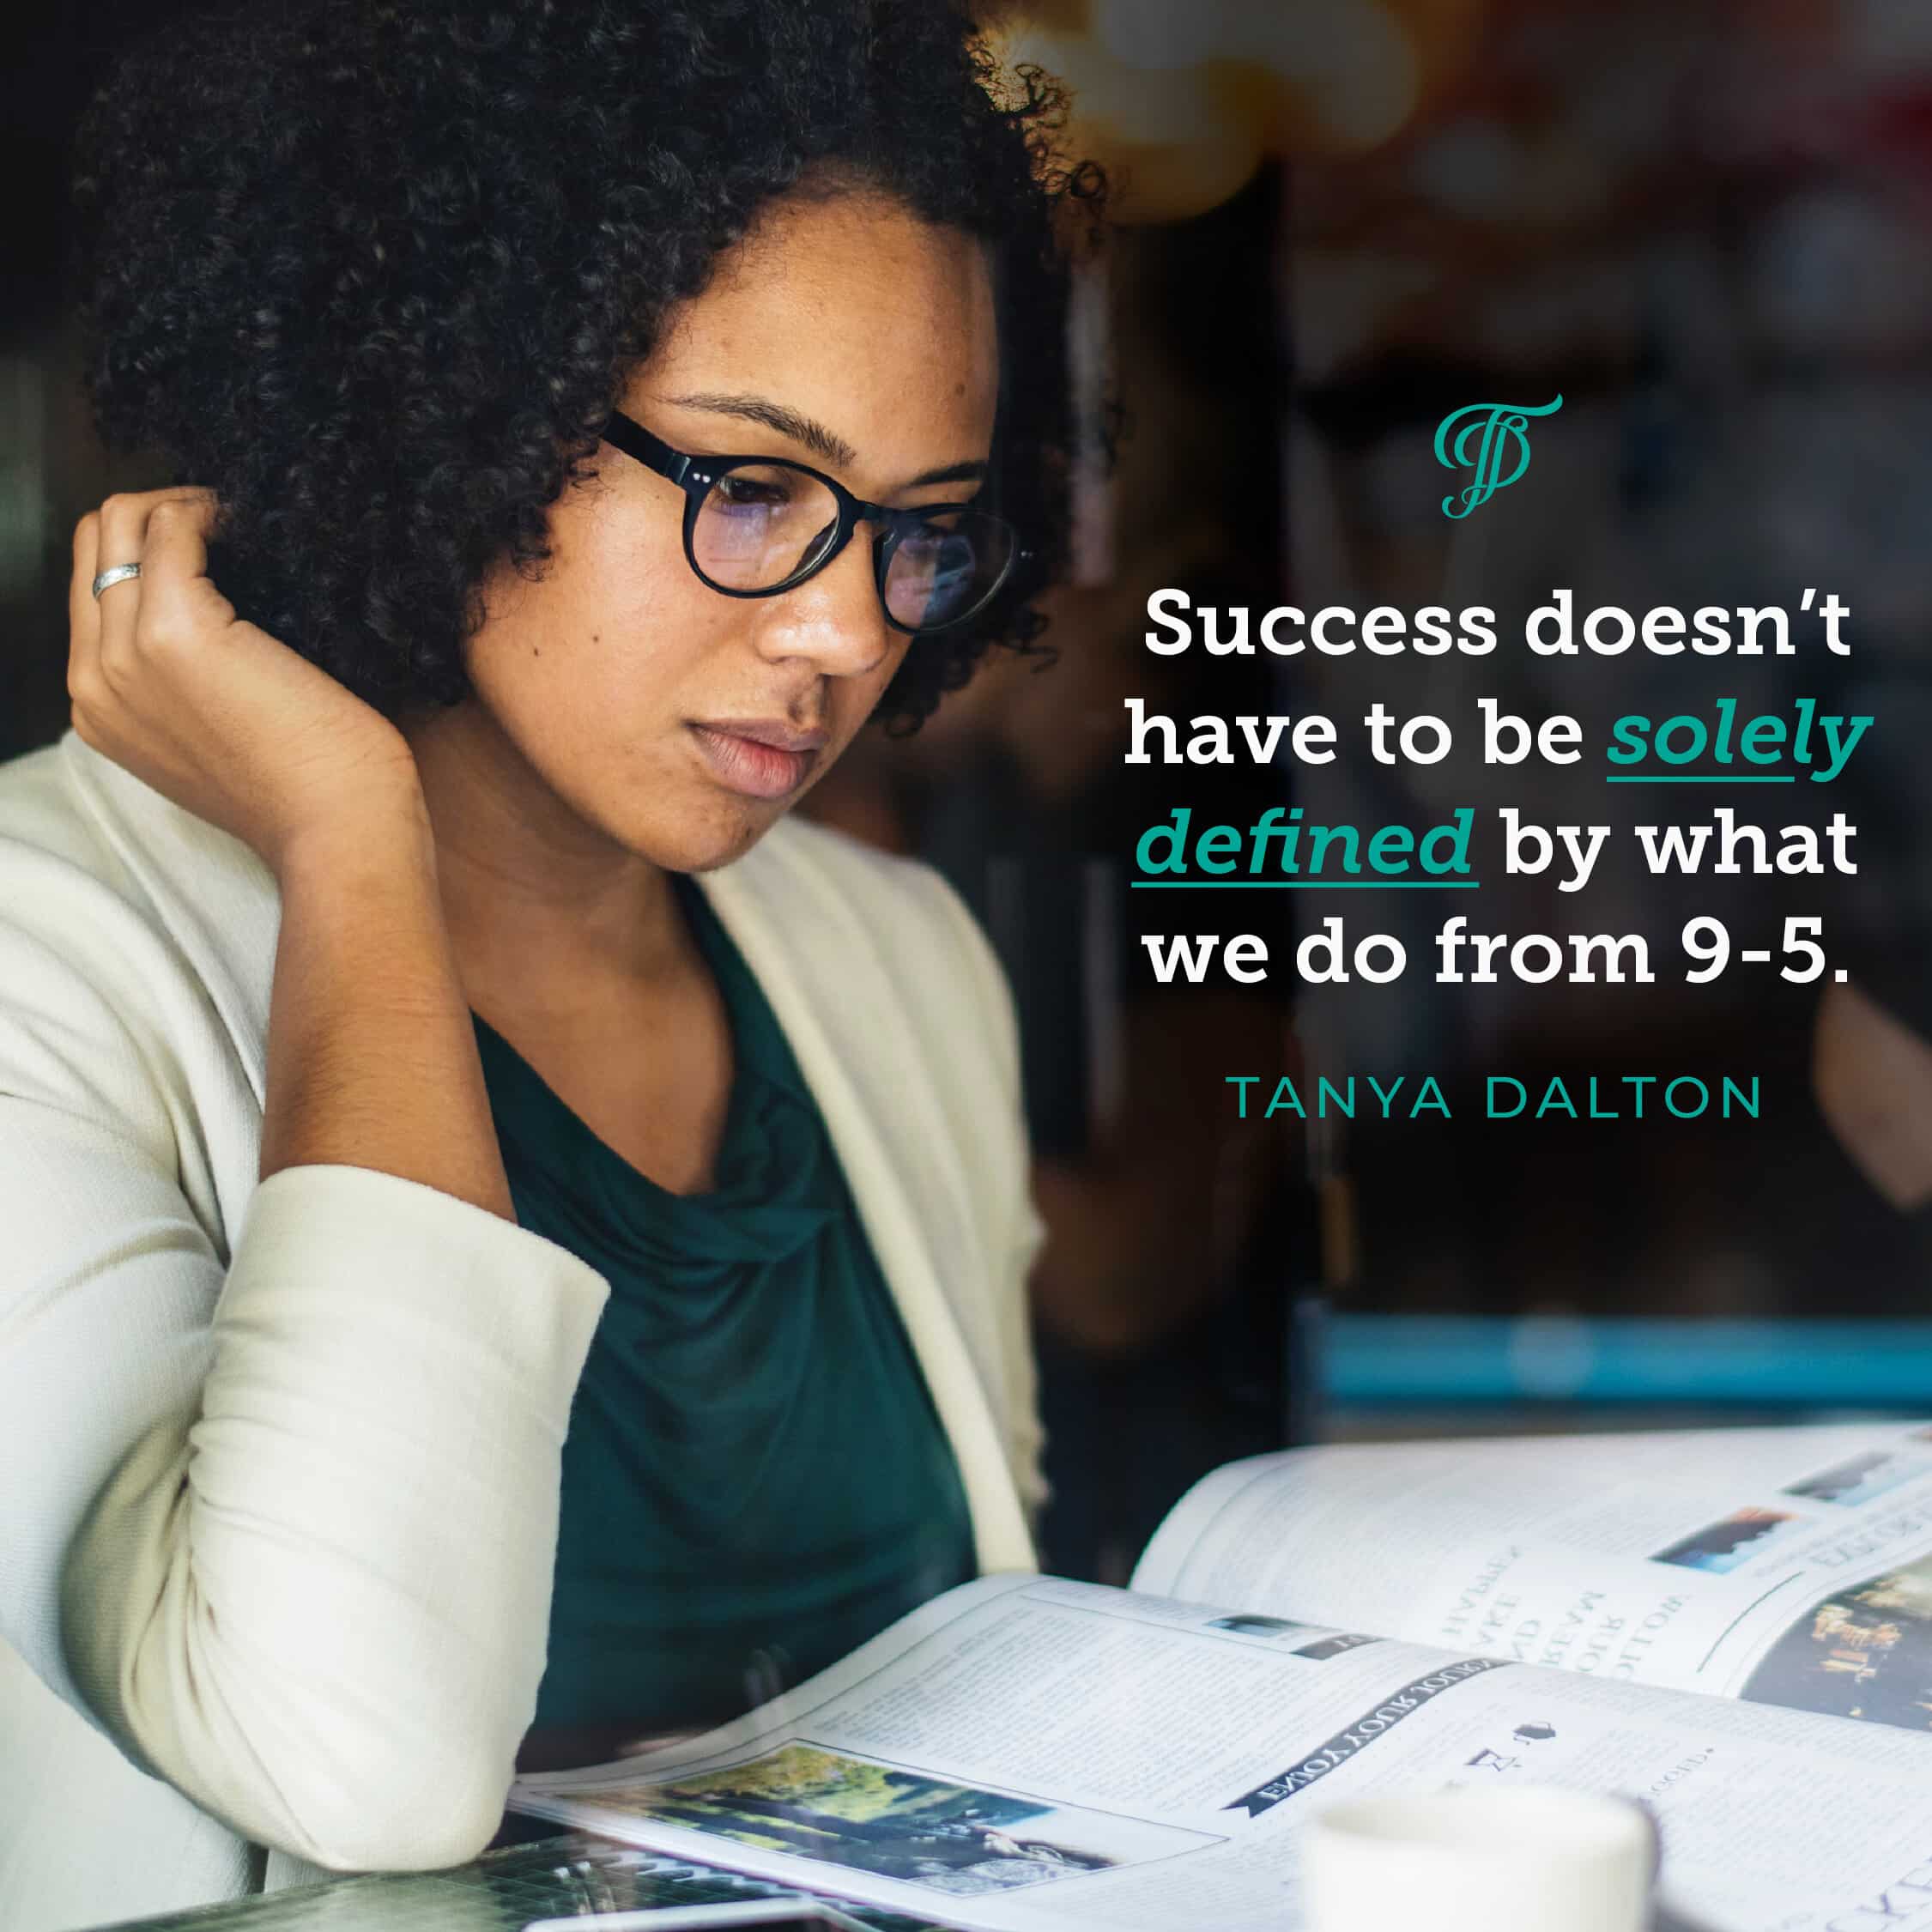 Tanya Dalton quote on success